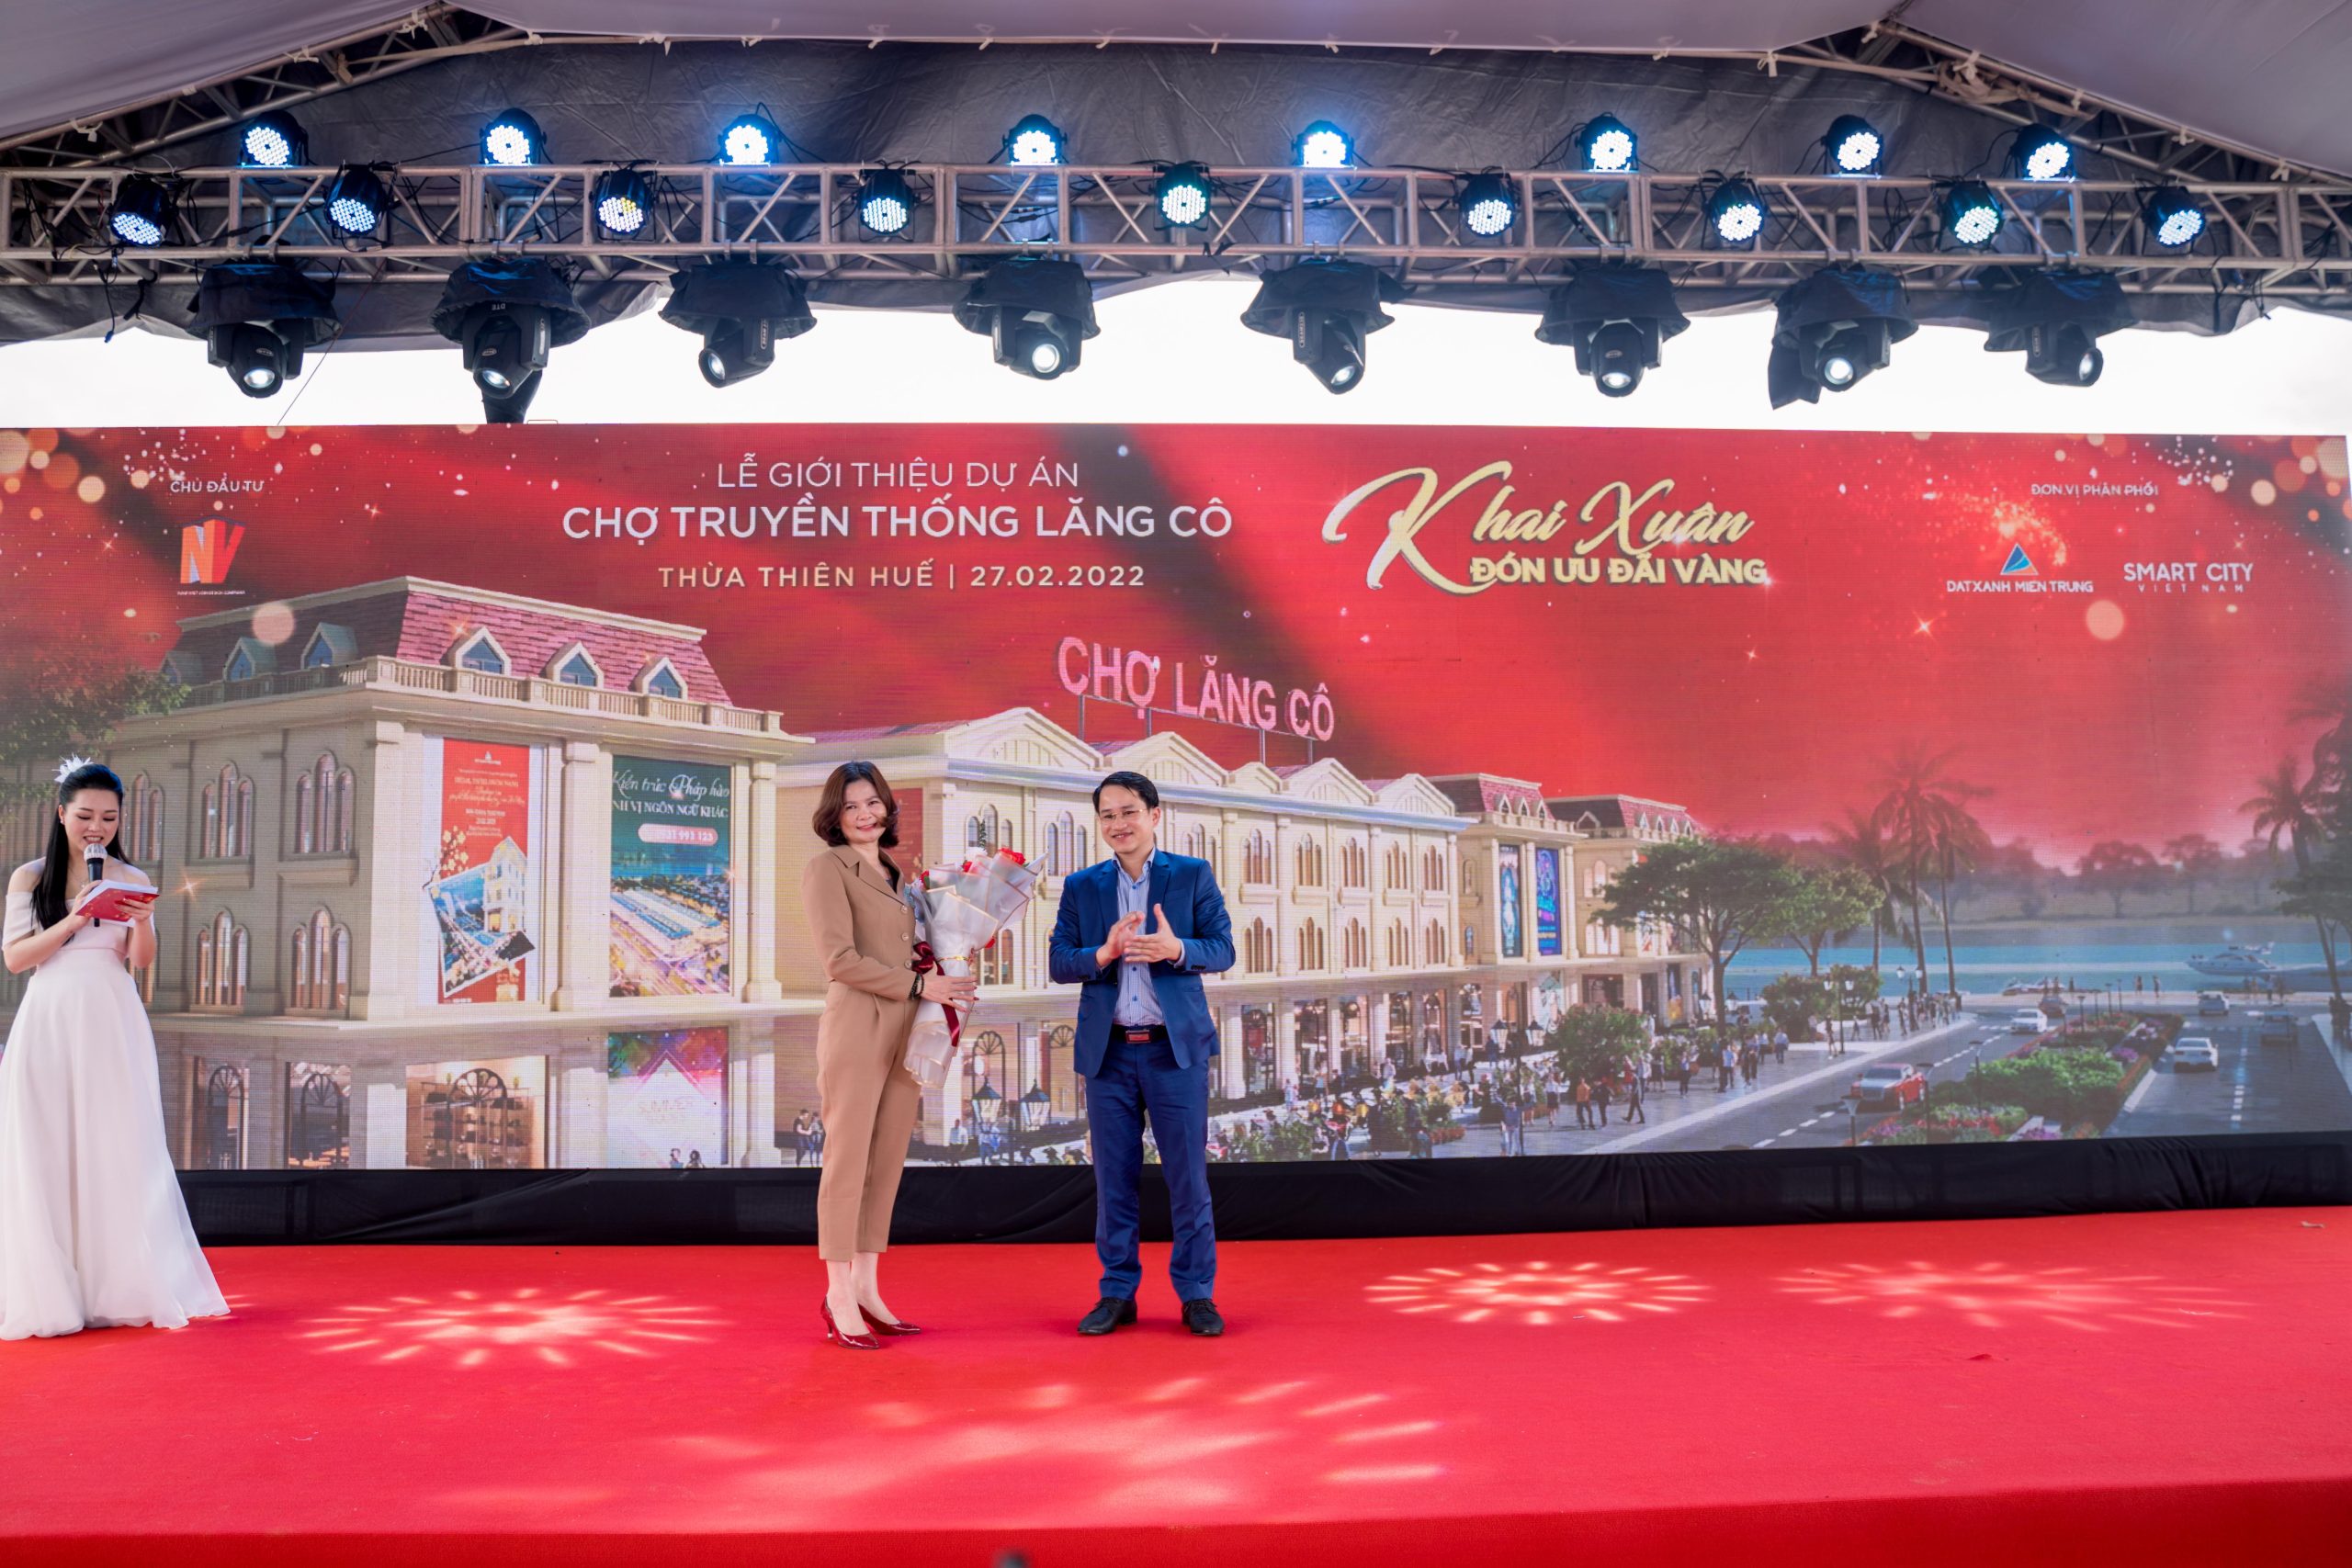 Ngoài dự kiến, Viet Nam Smart City thu hút gần 80 giao dịch tại lễ giới thiệu dự án chợ Lăng Cô - Viet Nam Smart City